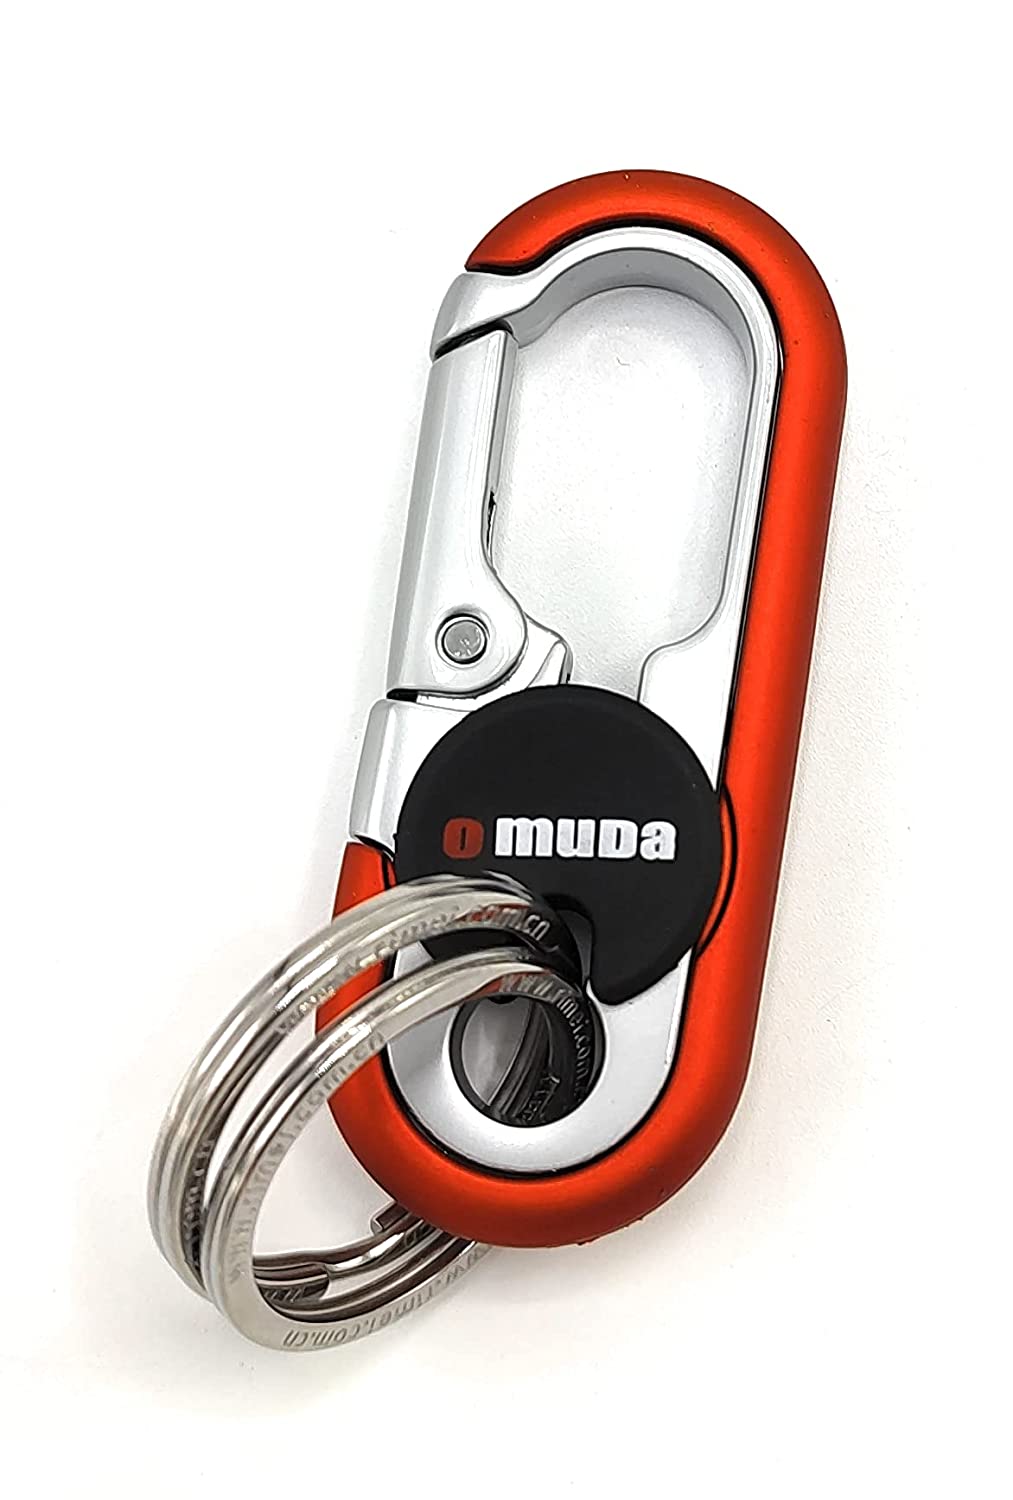 Omuda 8032 Key Chain Key Rings Heavy Duty Car Keychain